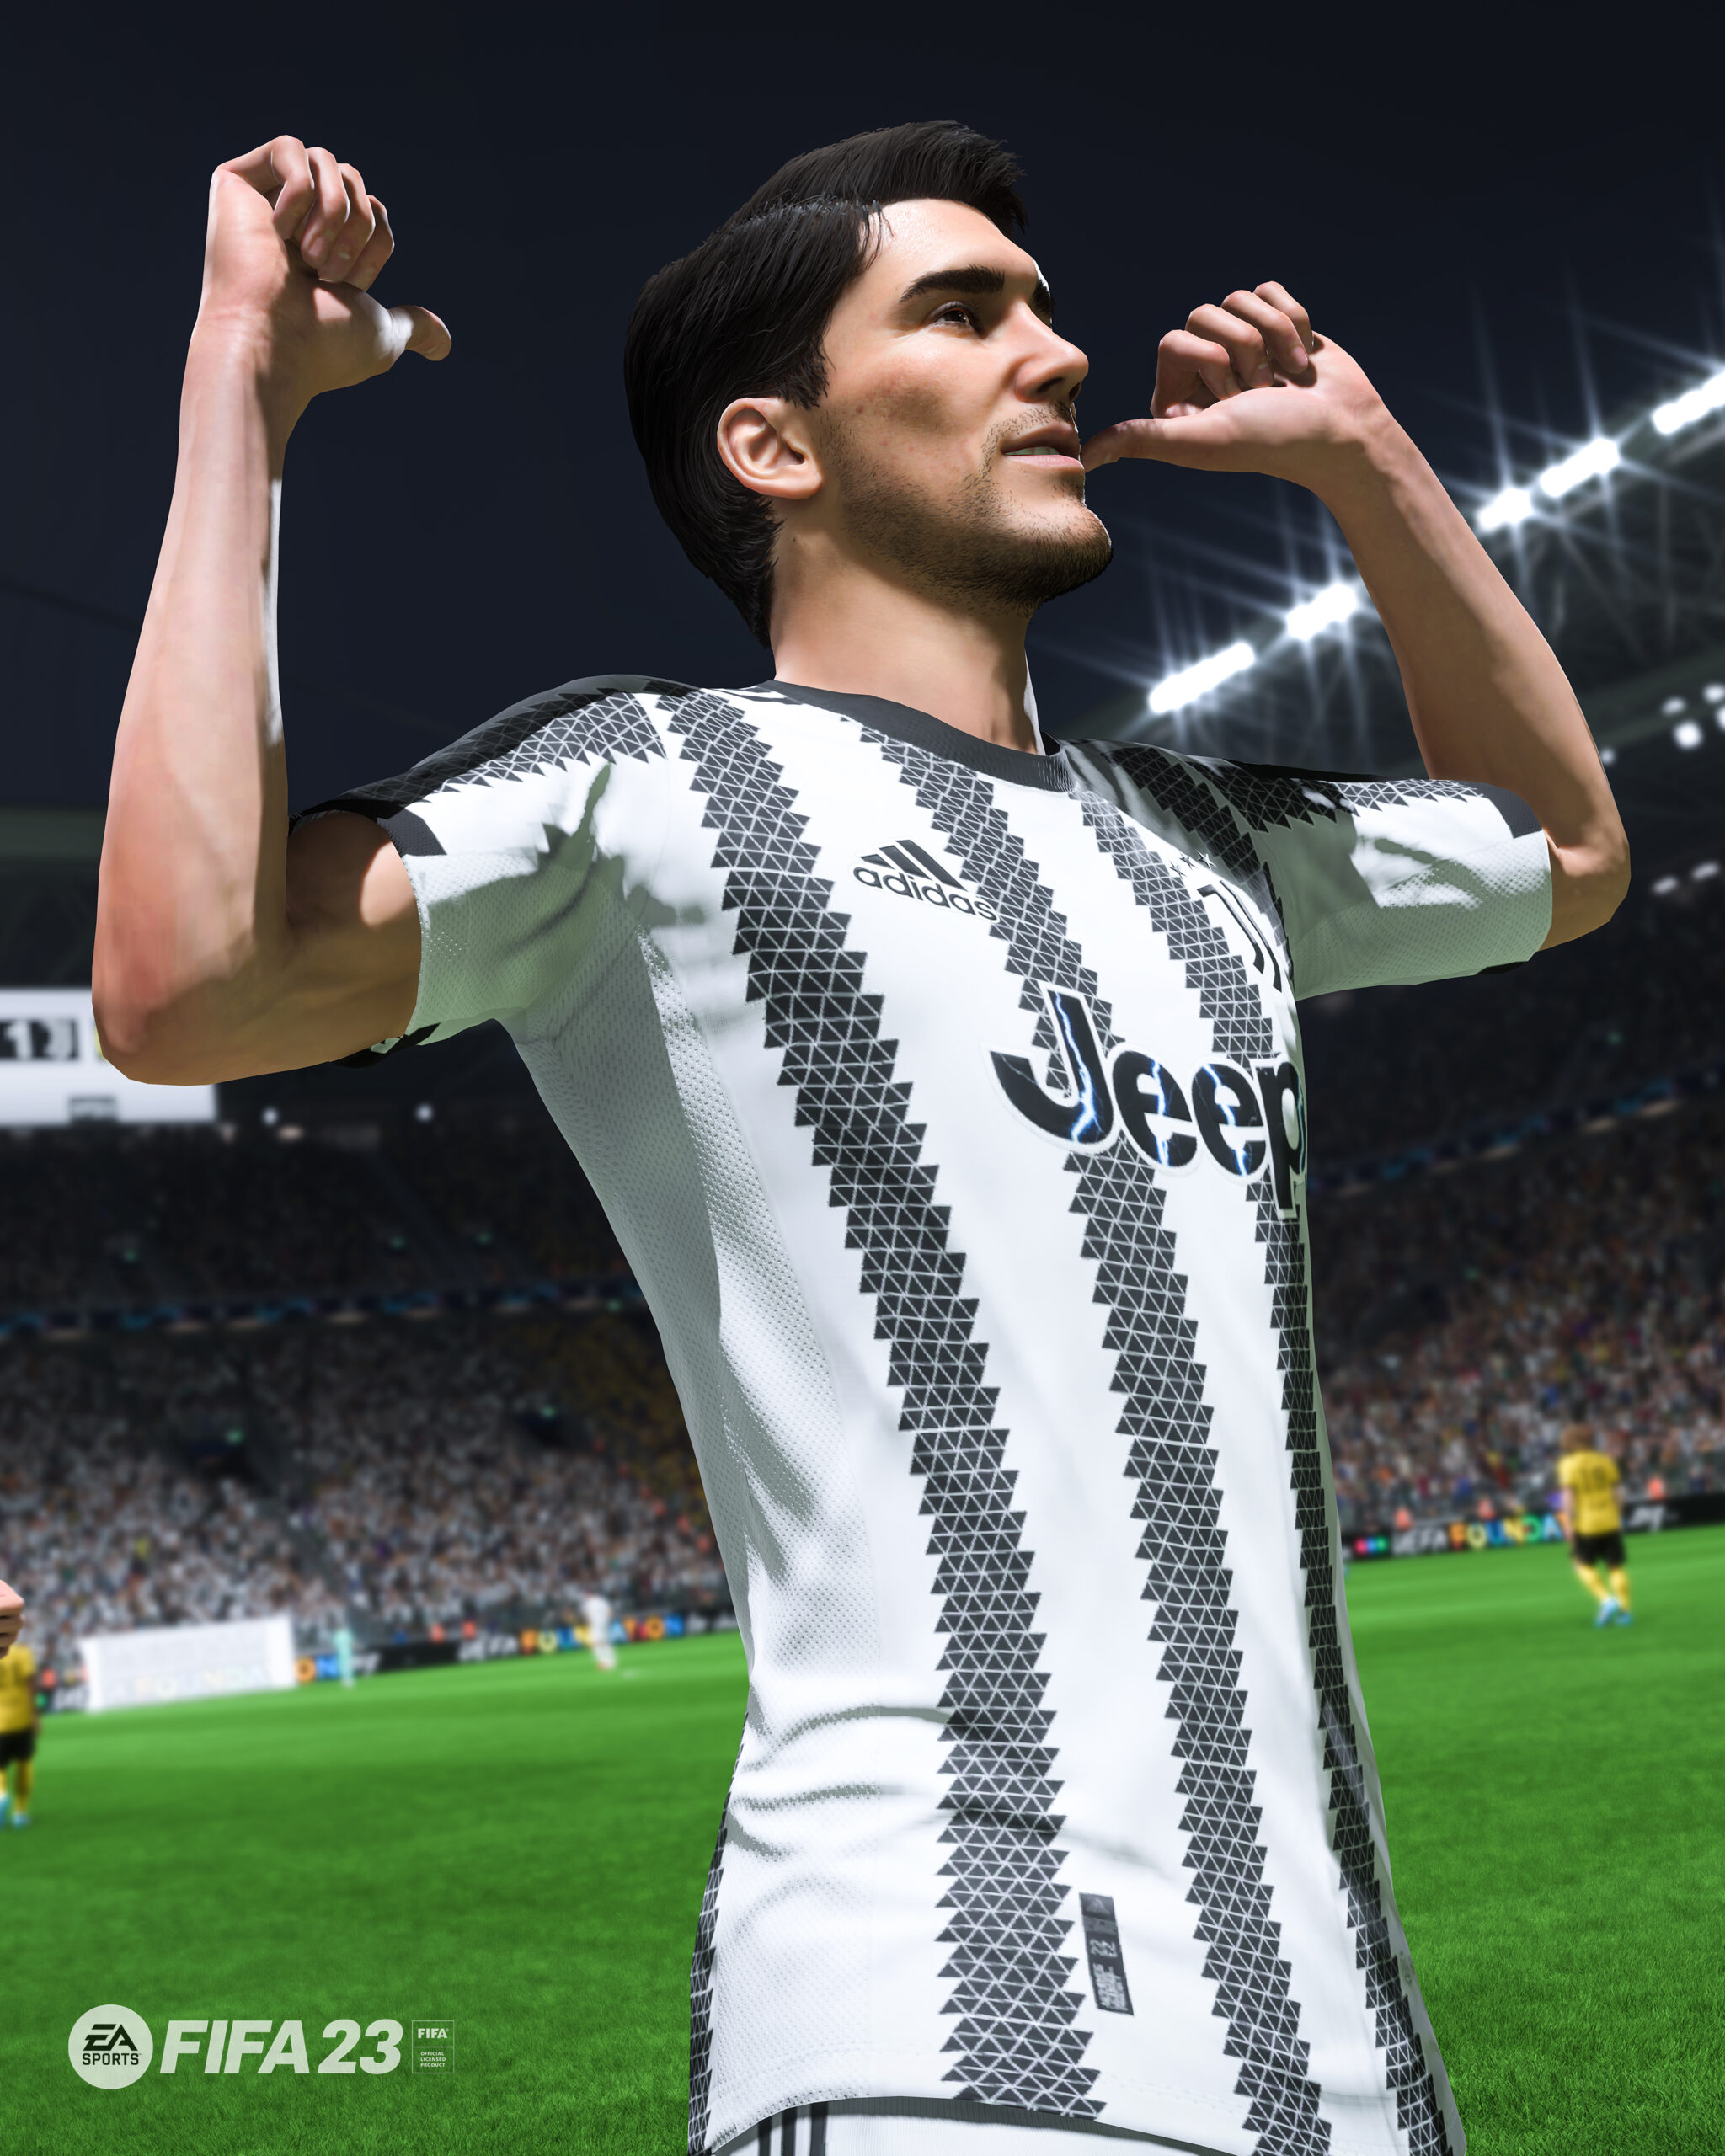 #FIFA23 : Partenariat entre EA SPORTS et la Juventus Football Club